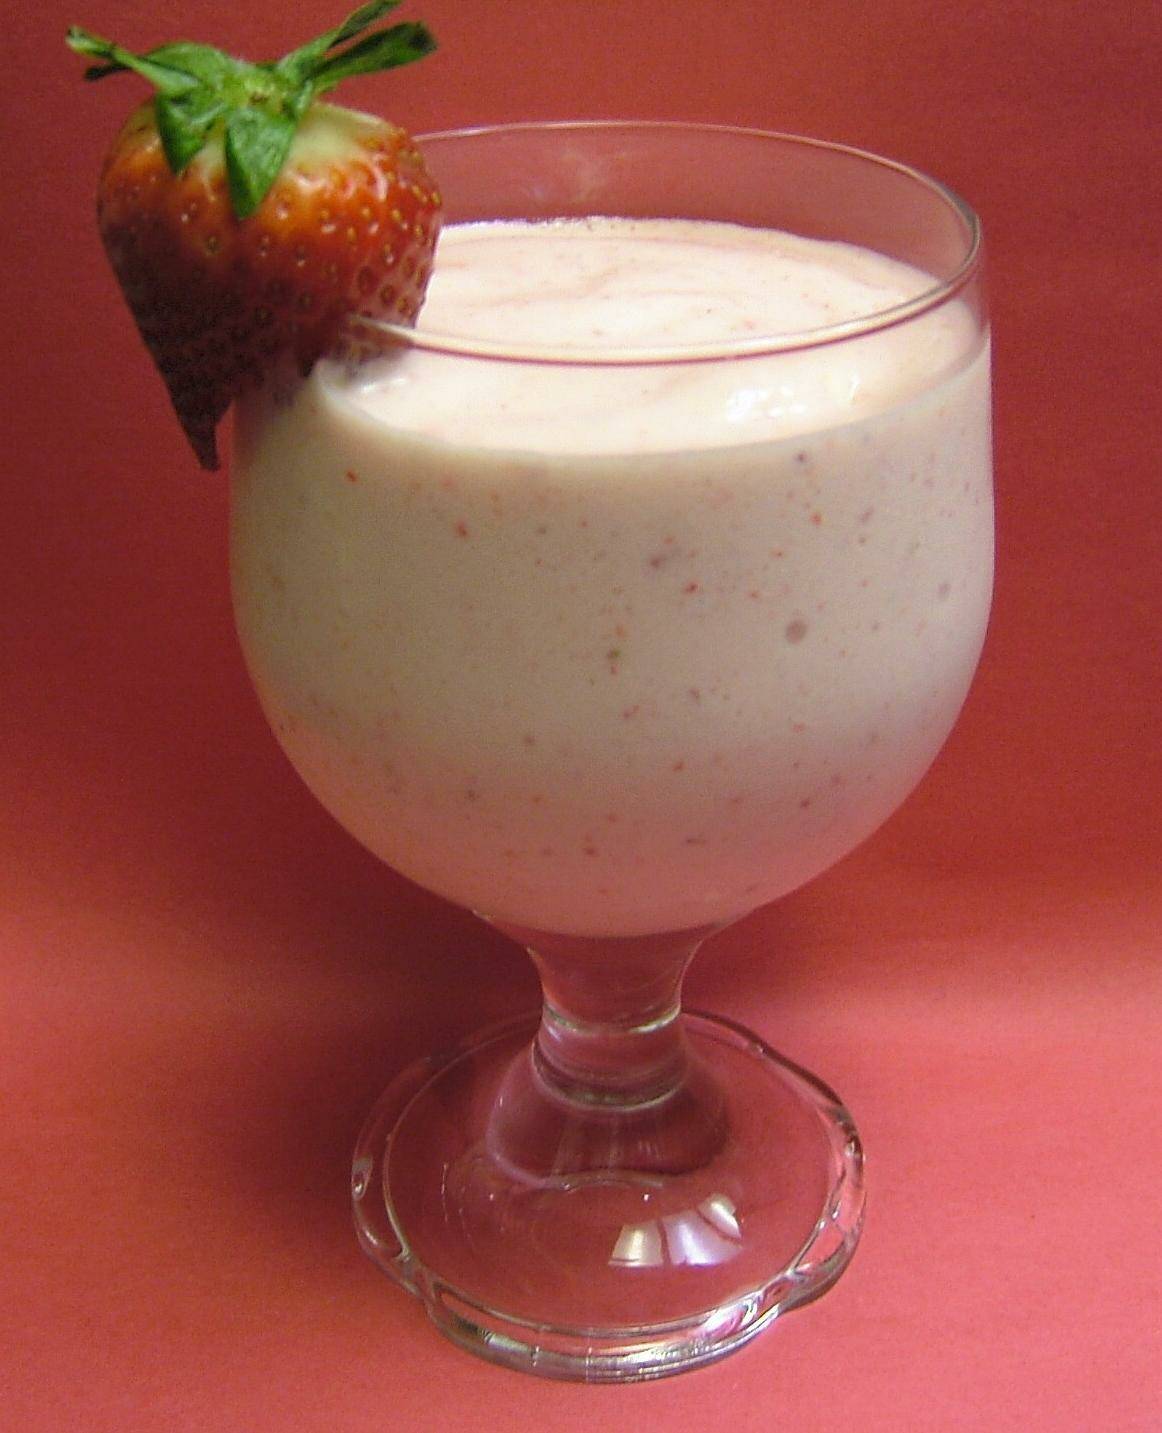 Creamy Strawberry Daiquiris